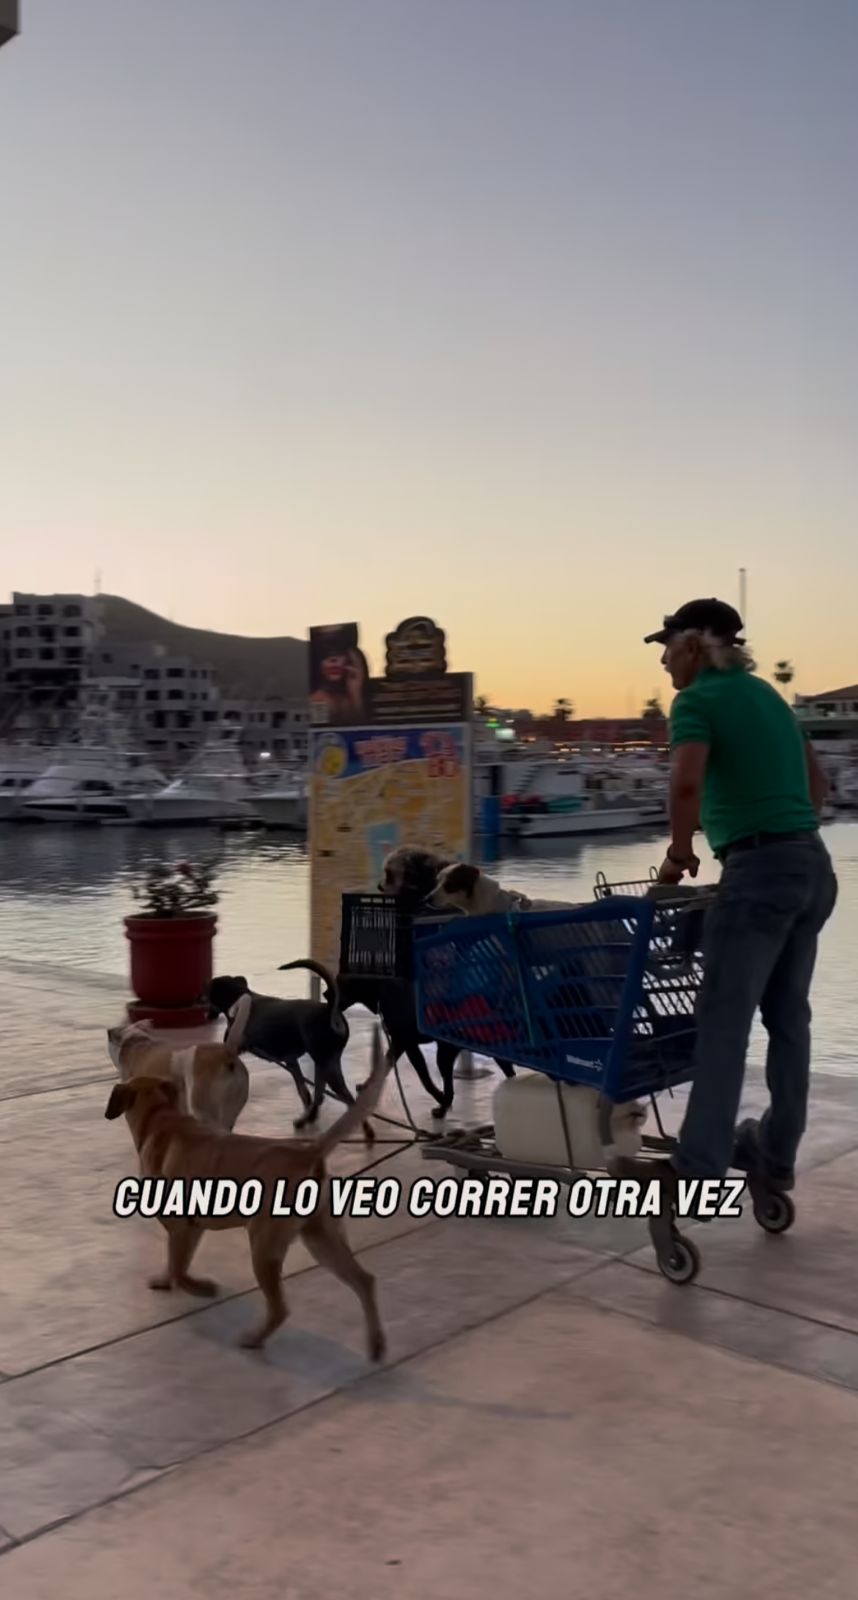 Conoce la historia del "Santa Claus de Cabo": Hombre recorre calles con su "trineo" de perros